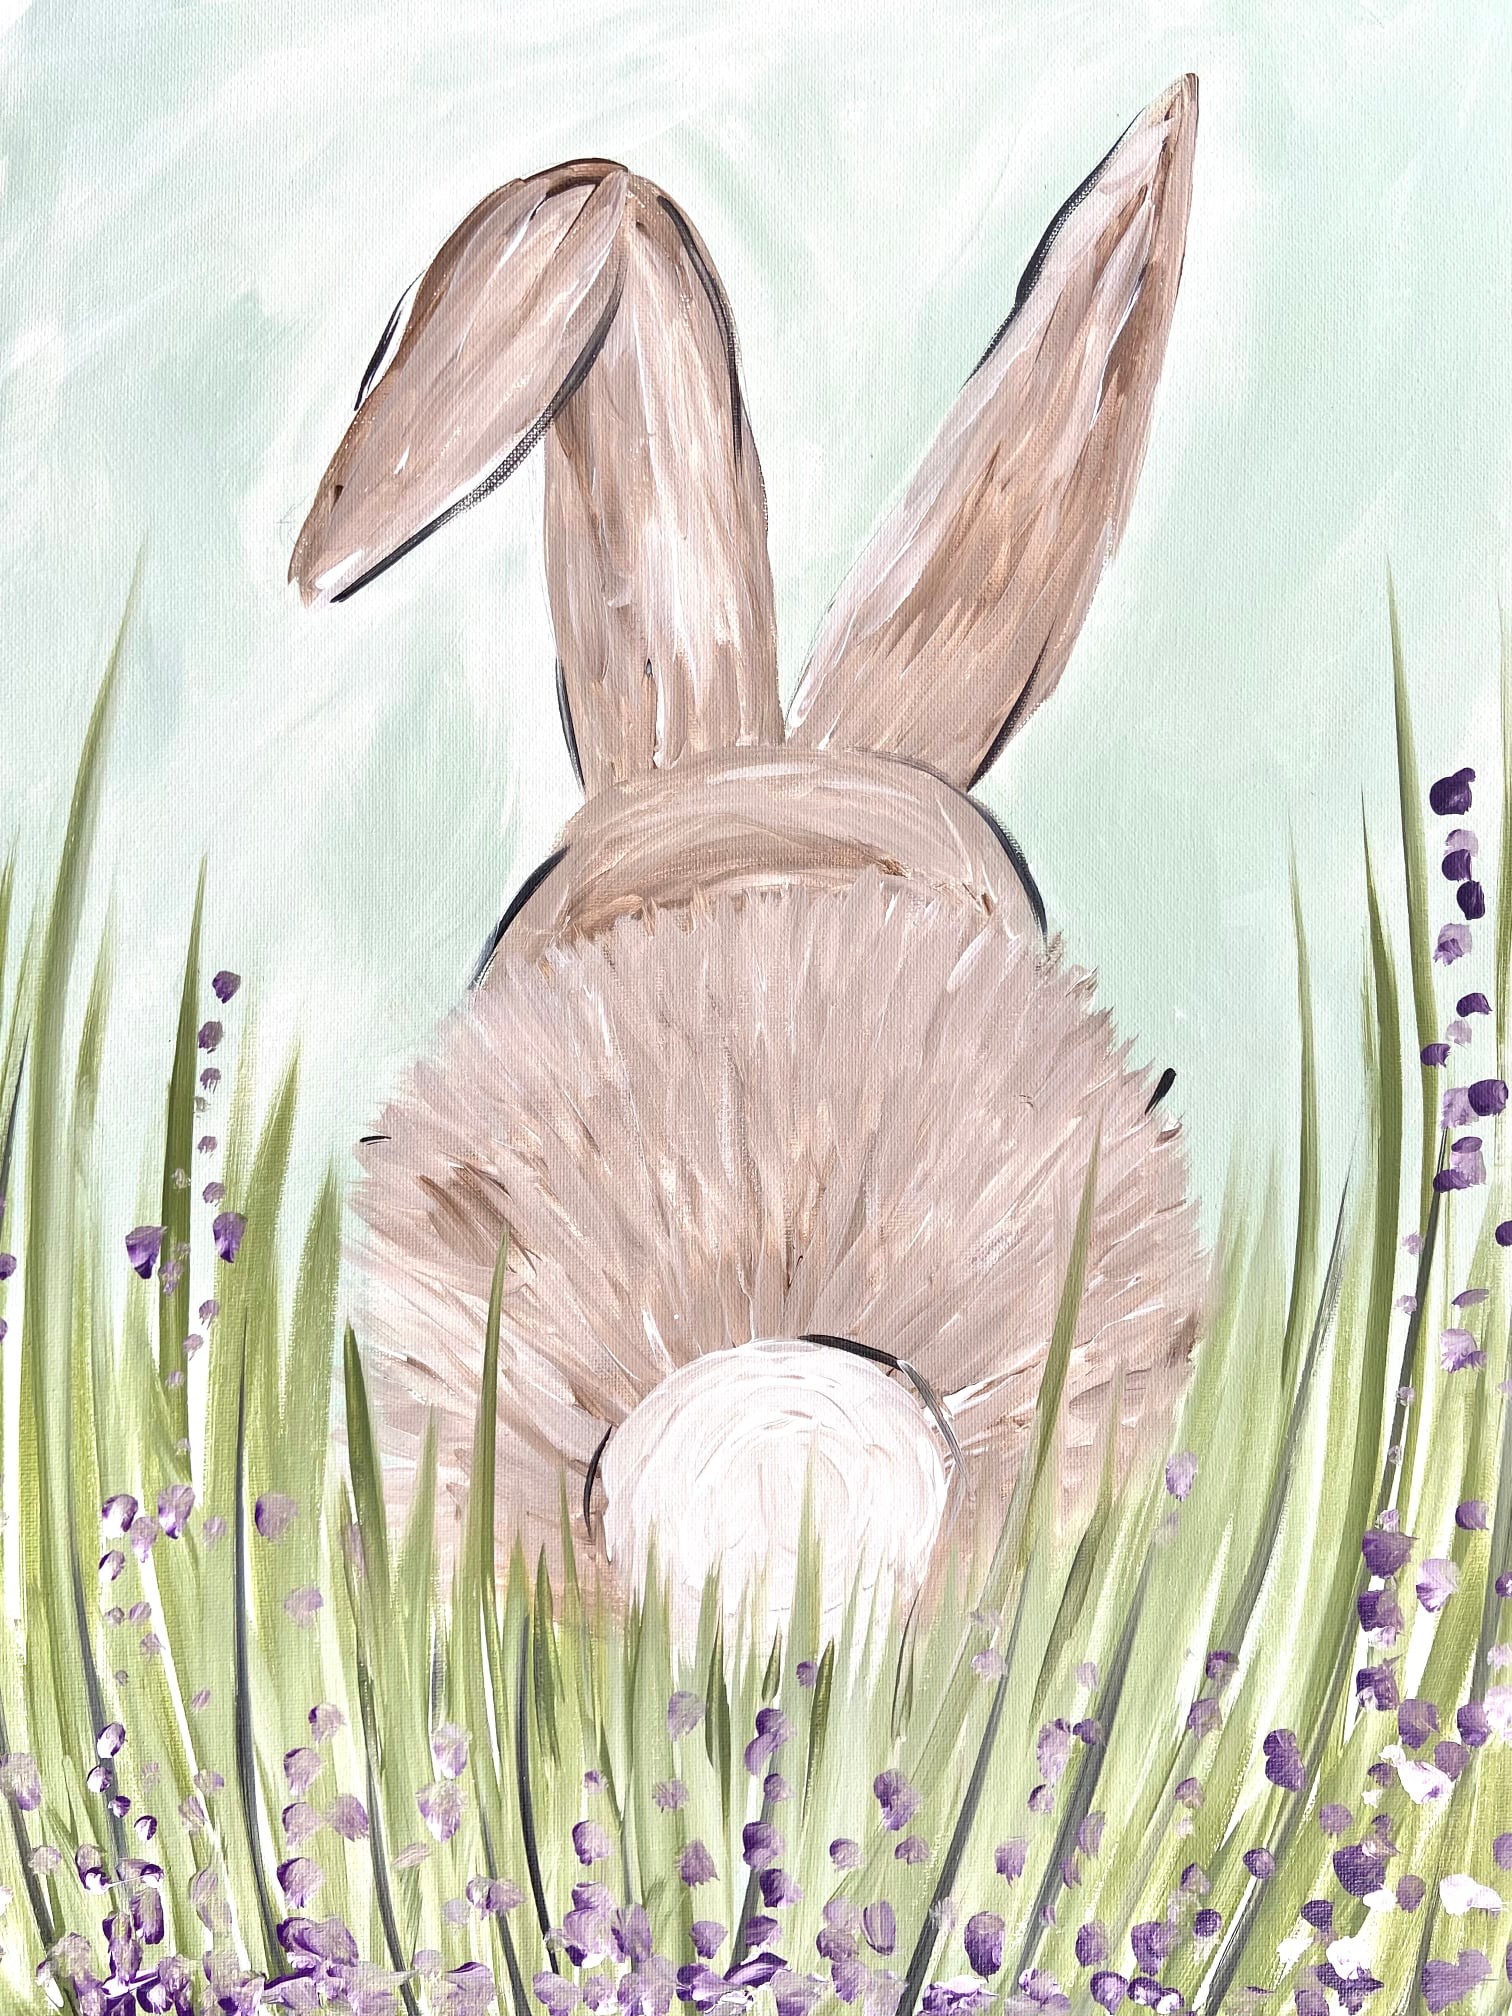 Bunny in a field